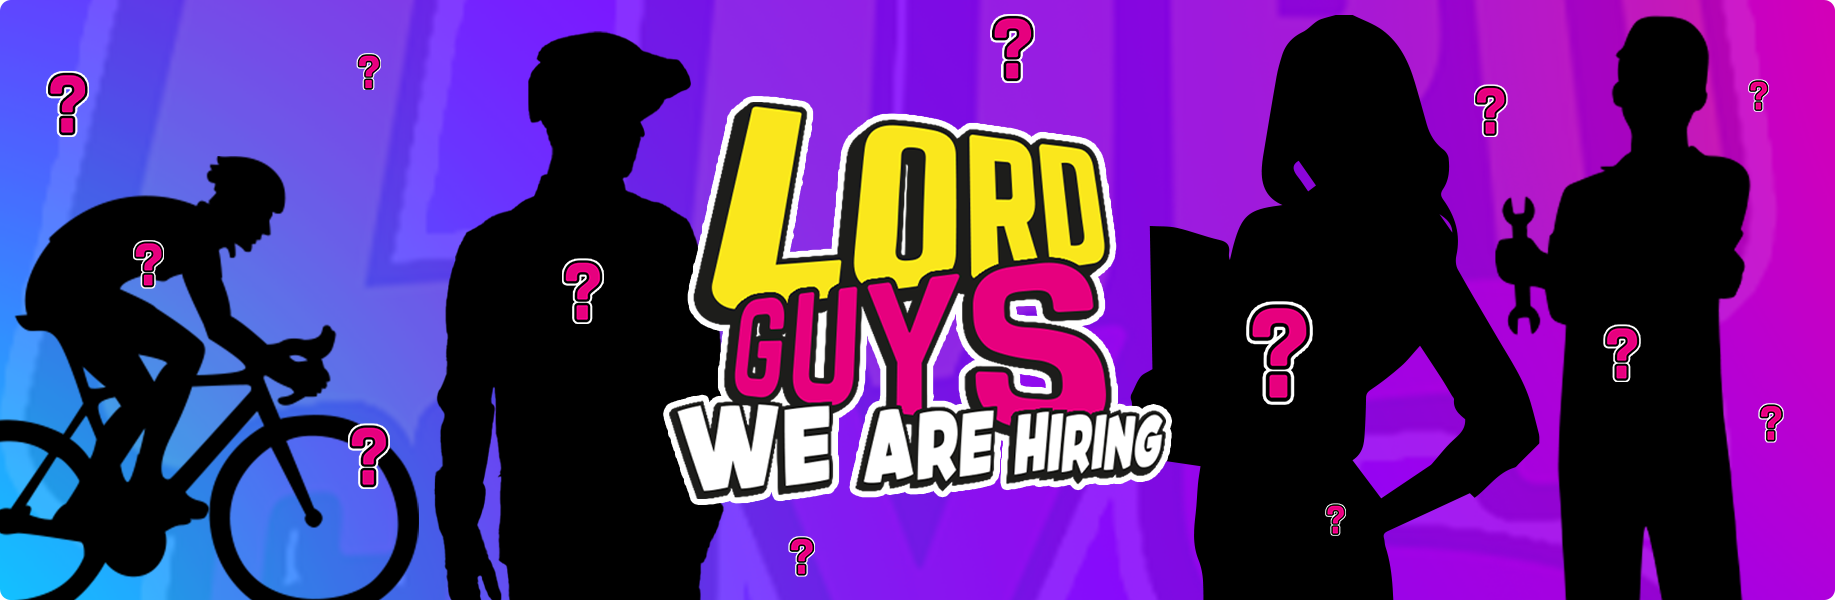 LordGun: vuoi lavorare con noi?